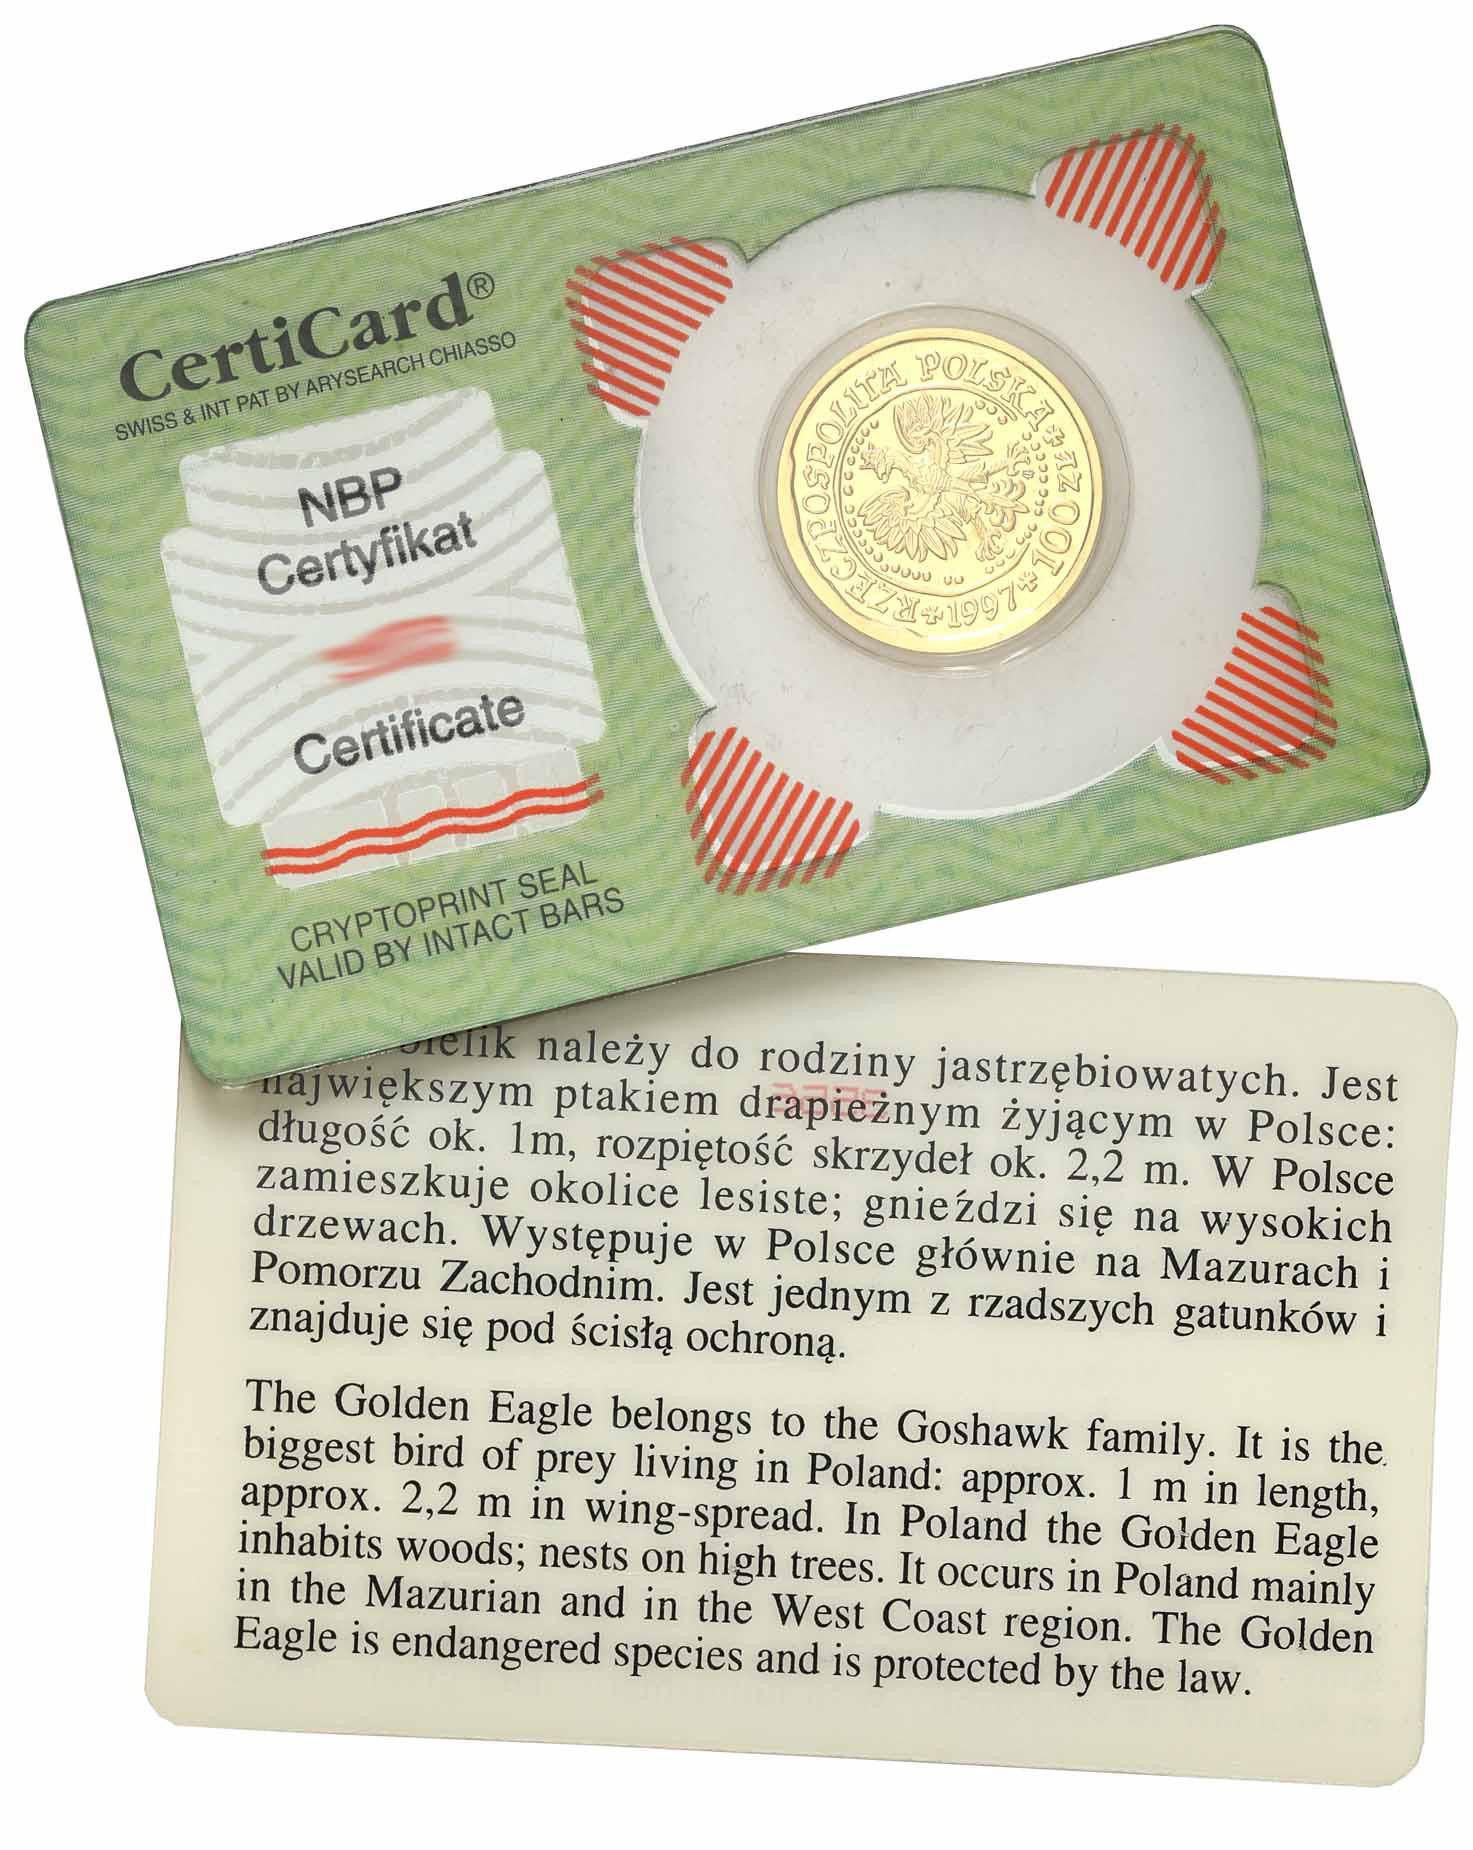 Polska. Złote 100 złotych 1997 Orzeł Bielik - 1/4 uncji złota